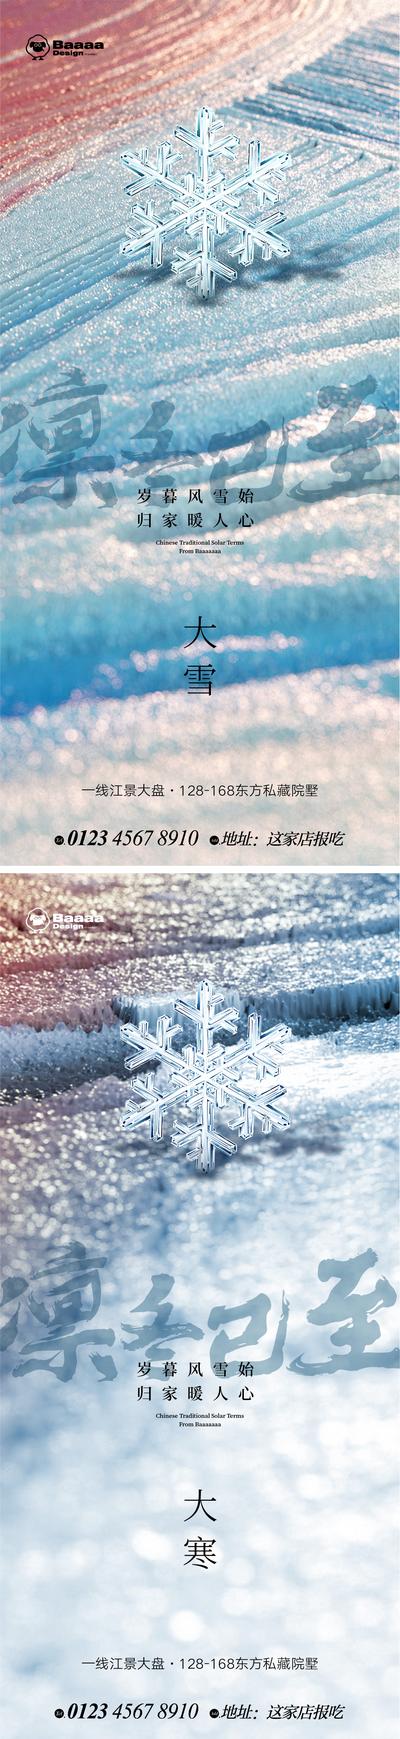 南门网 广告 海报 系列 大雪 冬至 小寒 大寒 雪花 肌理 背景 底纹 大气 抽象 纹理 悬念 精致 微信